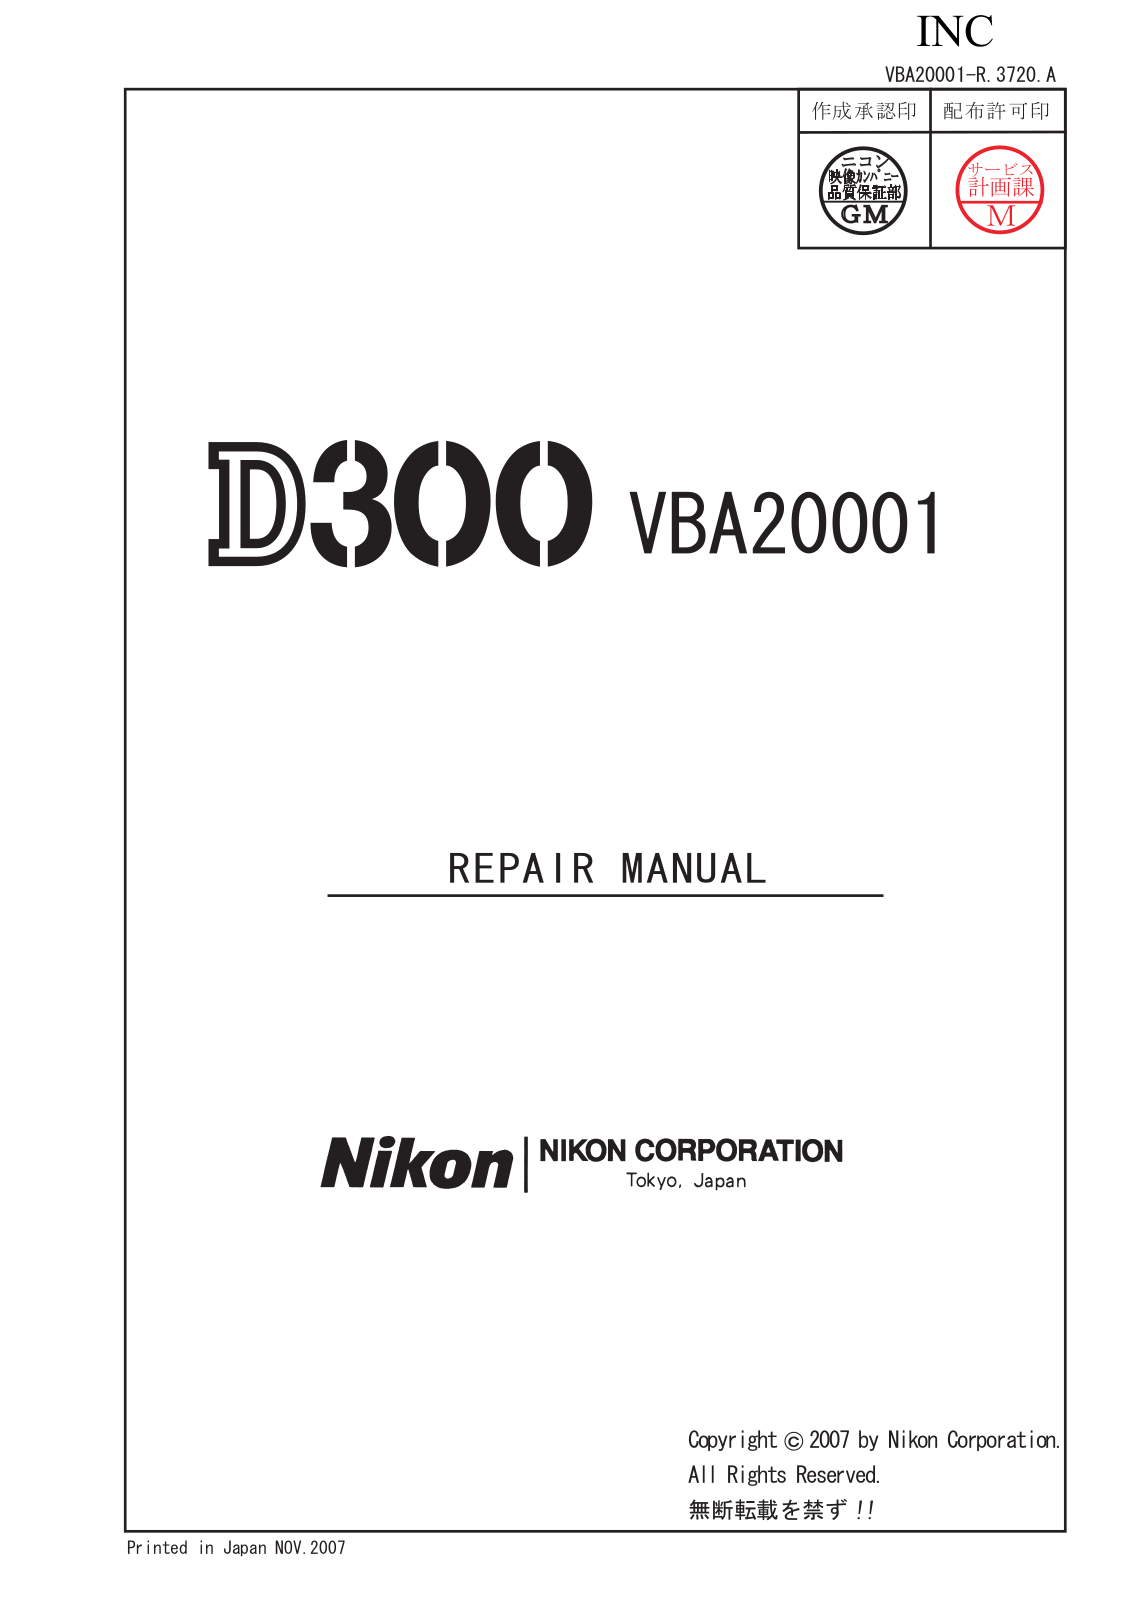 Nikon D300 Service manual